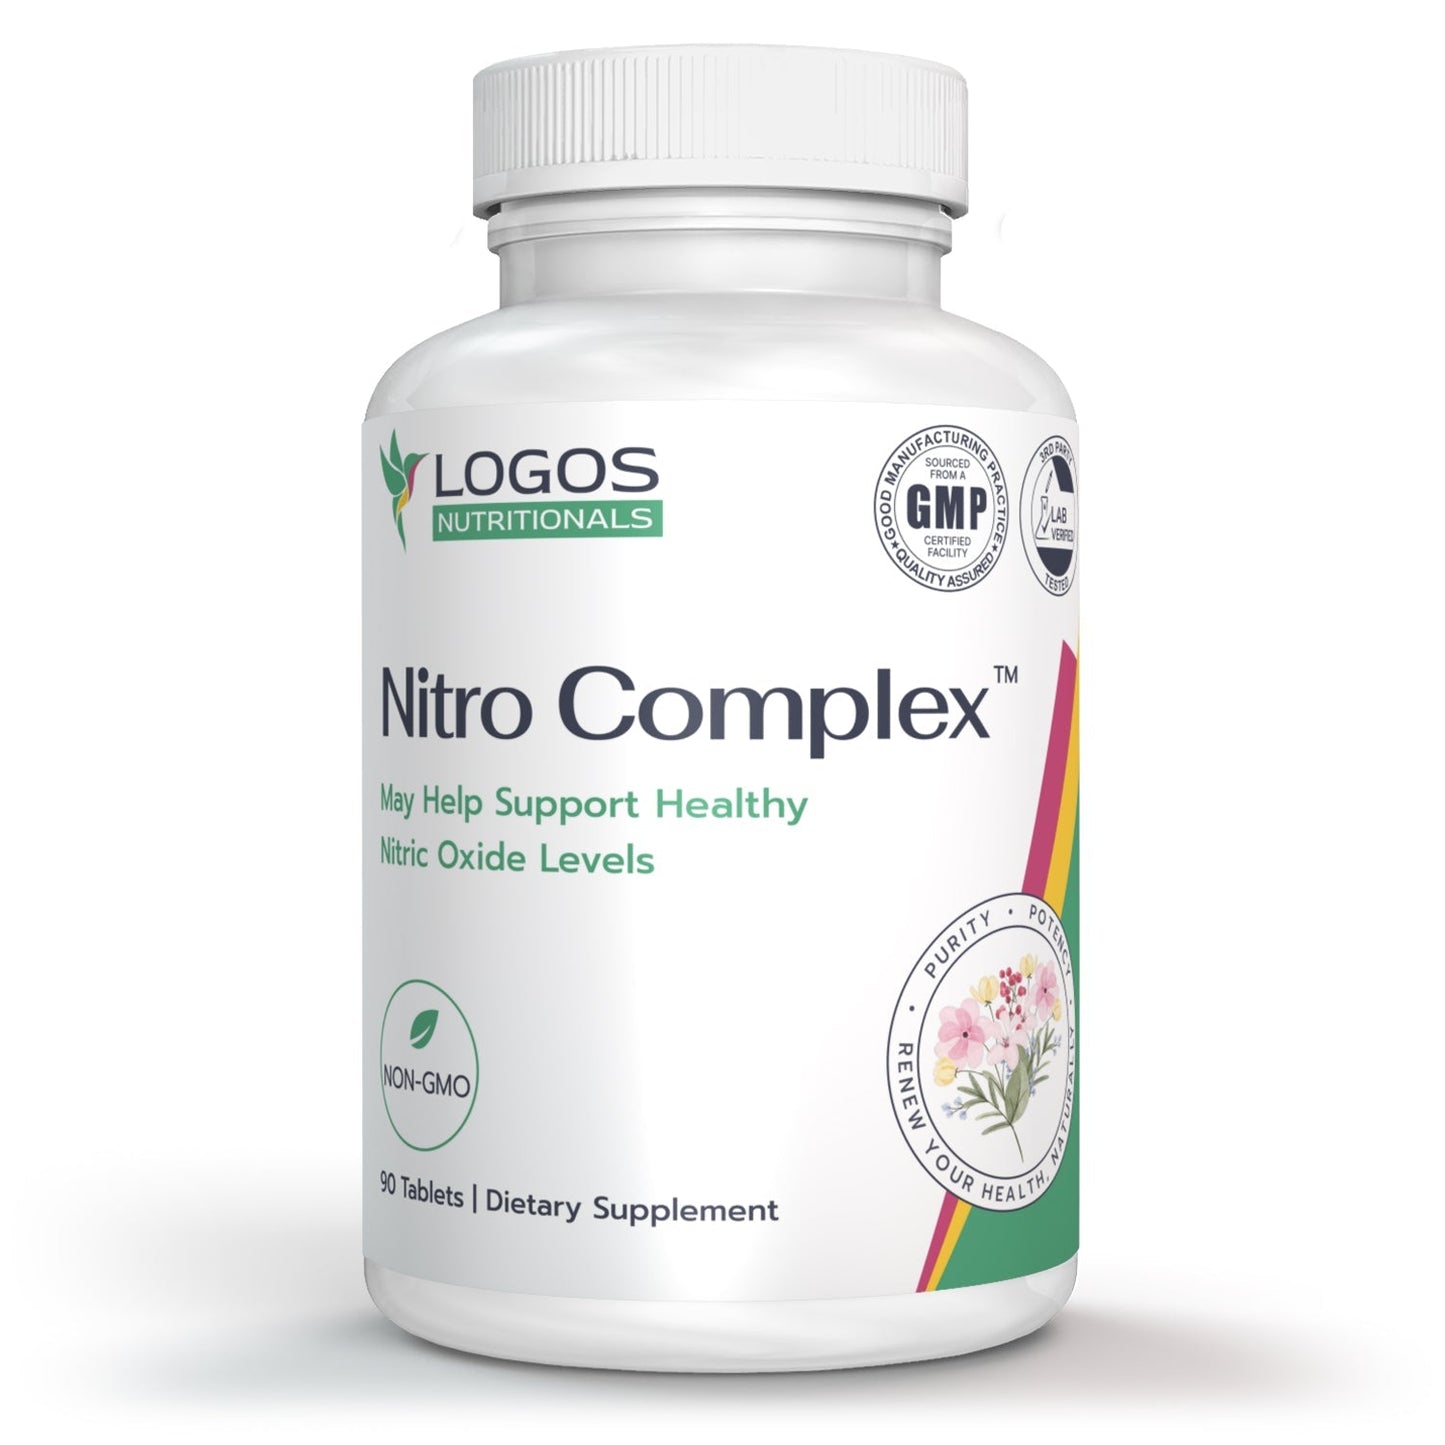 Nitro Complex™